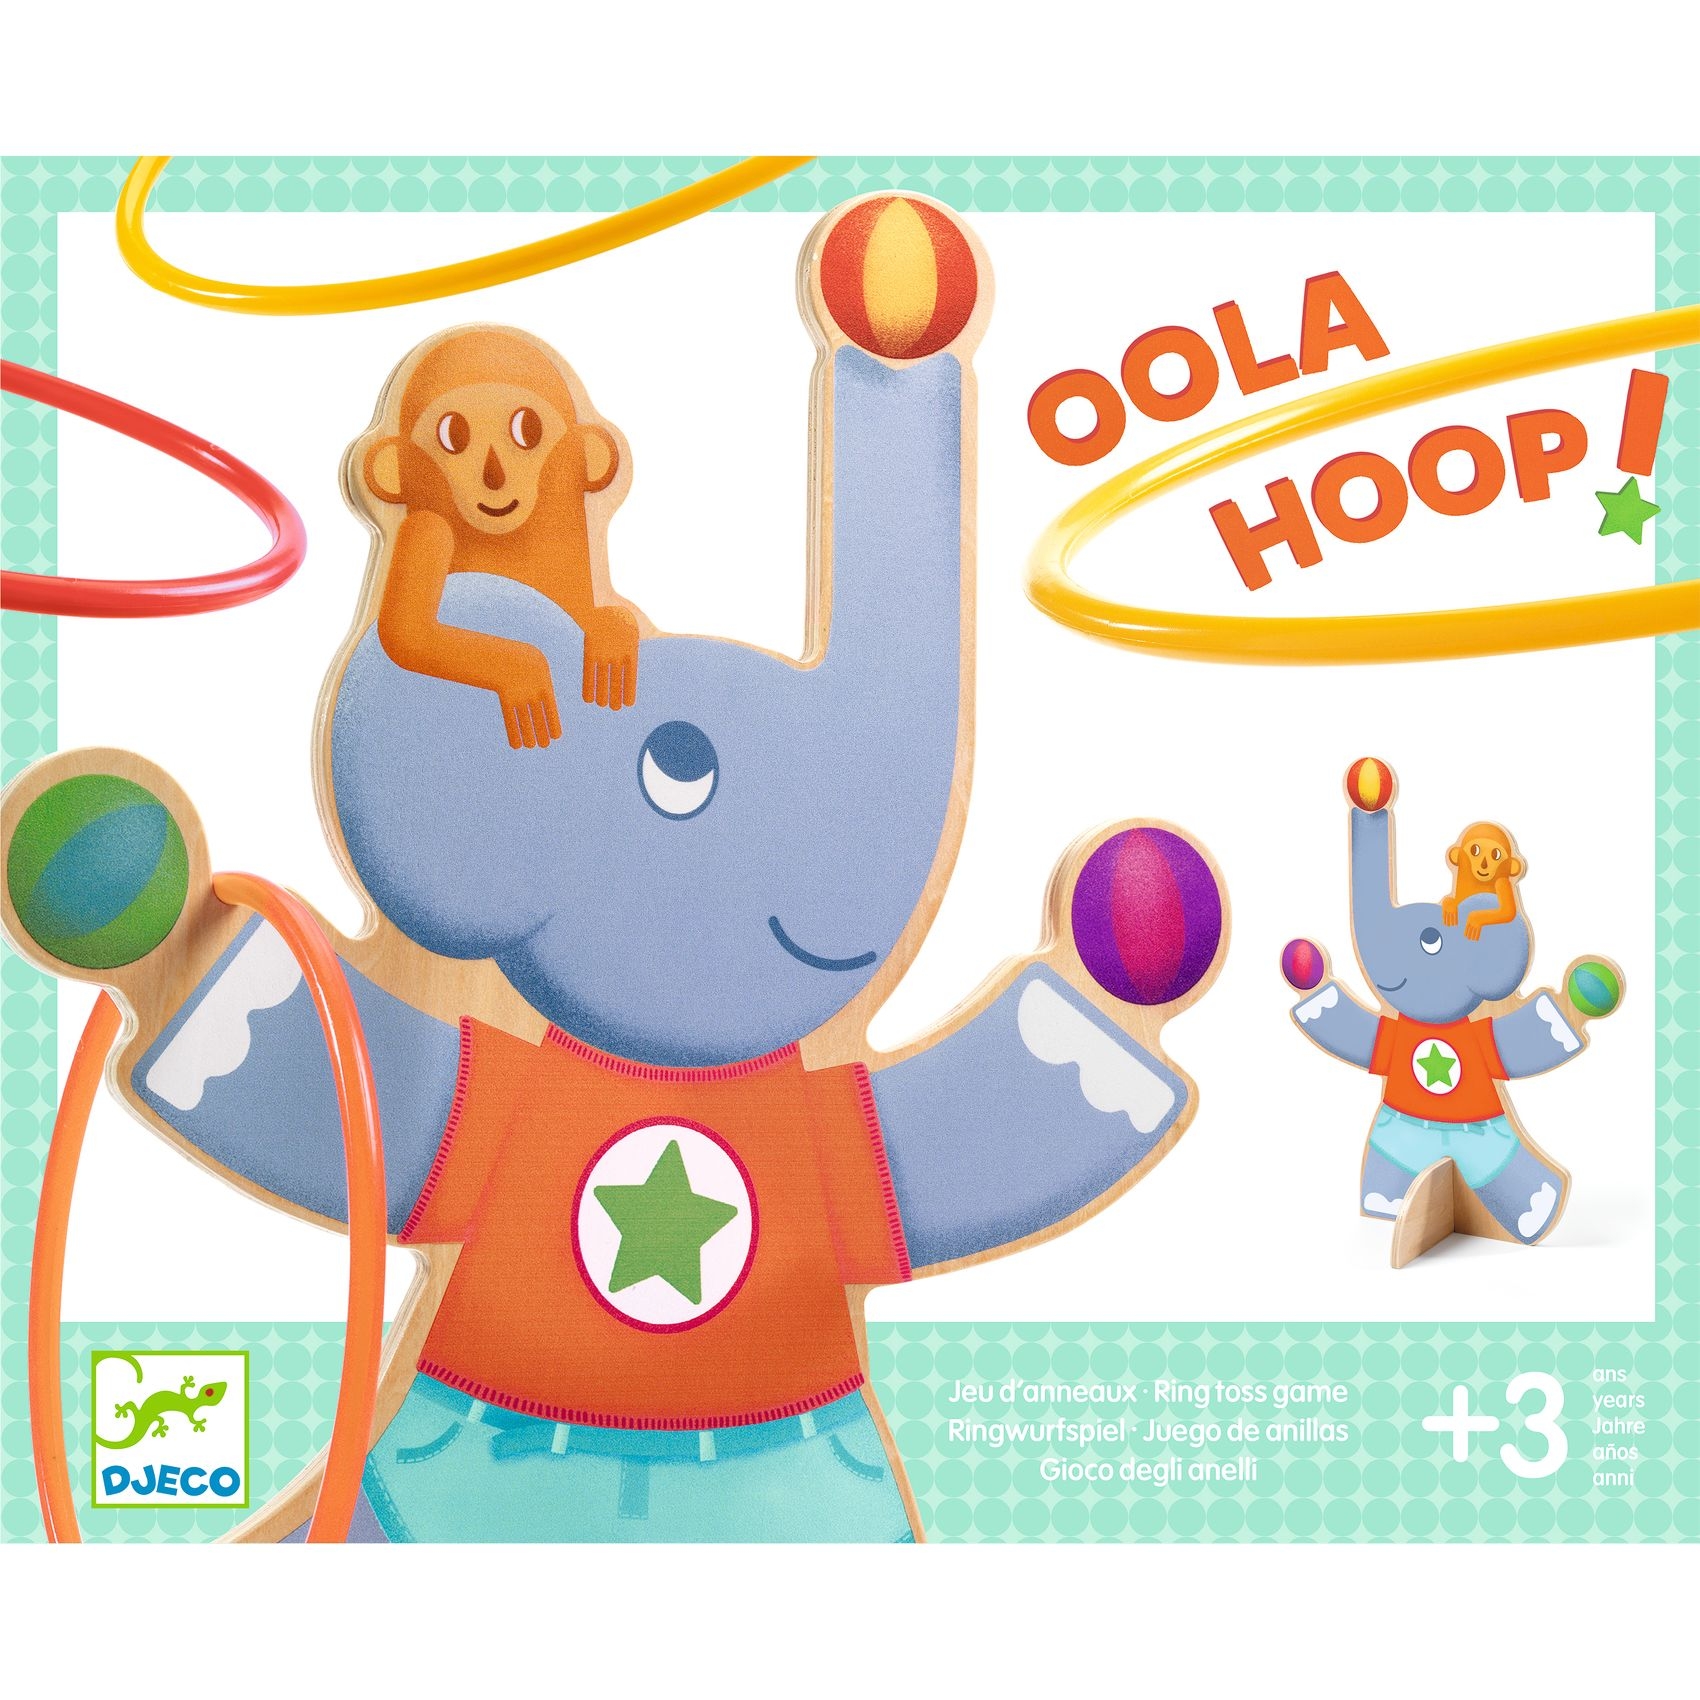 Célba dobó játék - Hullahopp - Oola Hoop - 1